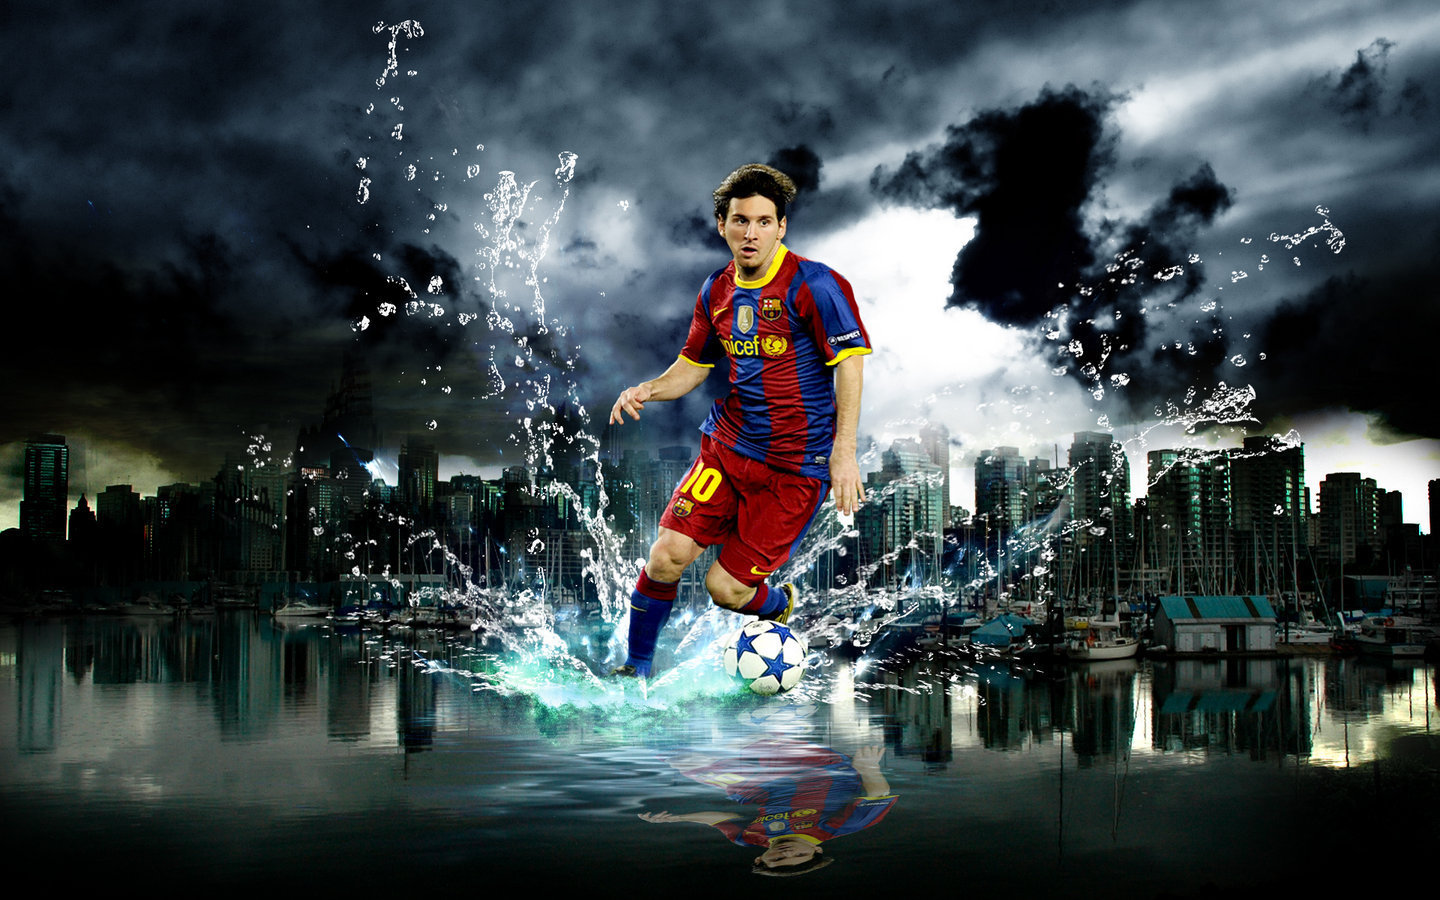 Với sự nghiệp bóng đá đỉnh cao của mình, Lionel Messi không chỉ là một cầu thủ bóng đá, mà còn là một biểu tượng của bóng đá. Hãy cùng sử dụng bức ảnh nền Lionel Messi bóng đá này để tôn lên sự độc đáo và sức mạnh của một siêu sao bóng đá thực sự.